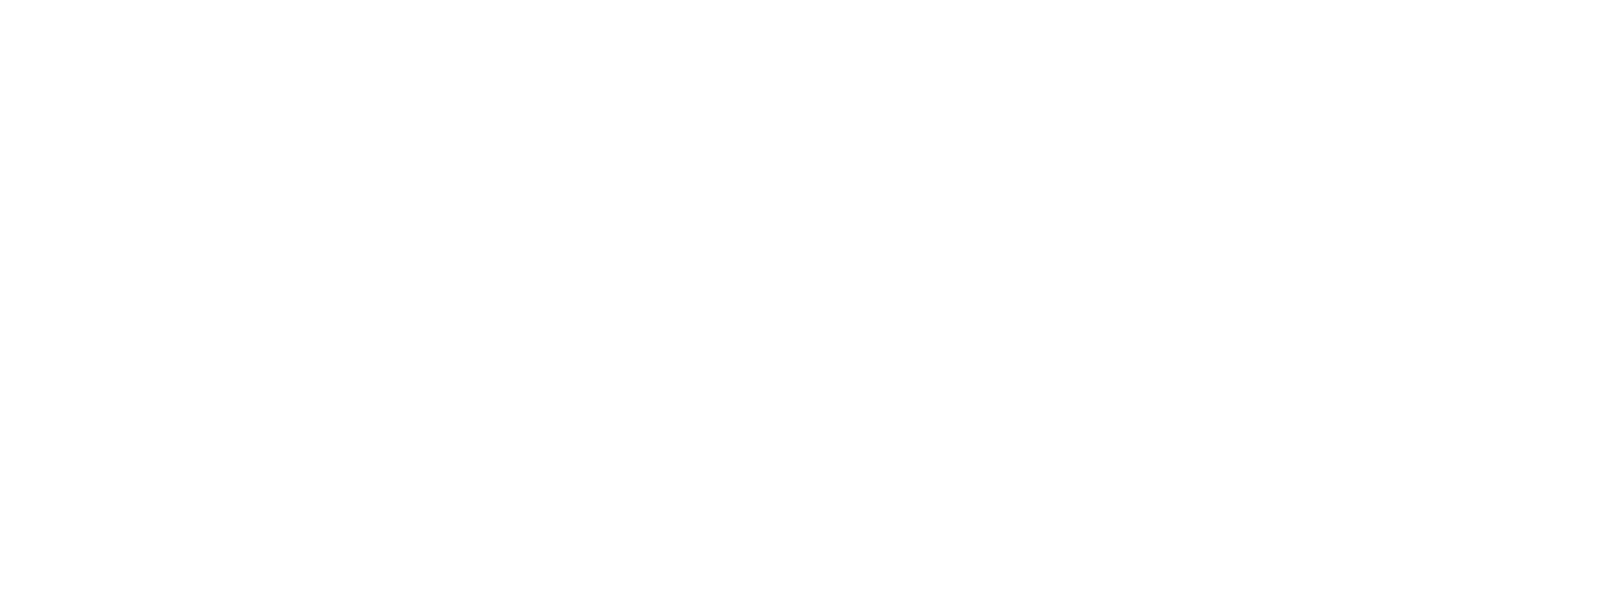 Imagen del logo de Unibagué más logo de ciencias económicas